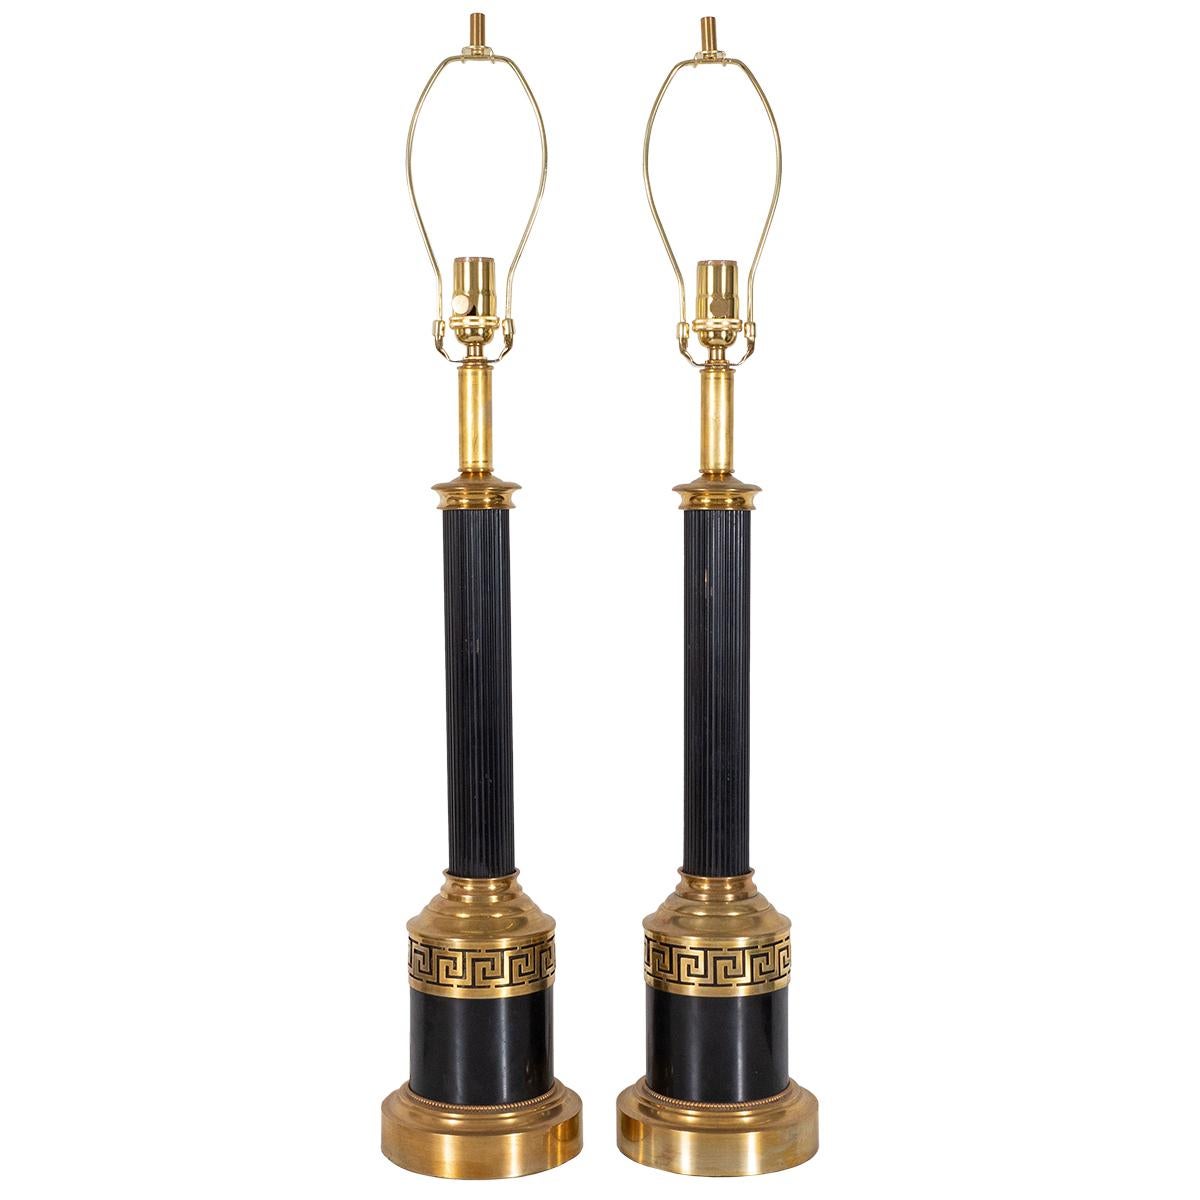 Paar neoklassizistische Tischlampen aus gemischtem Metall mit durchbrochenem griechischem Schlüsselmotiv.